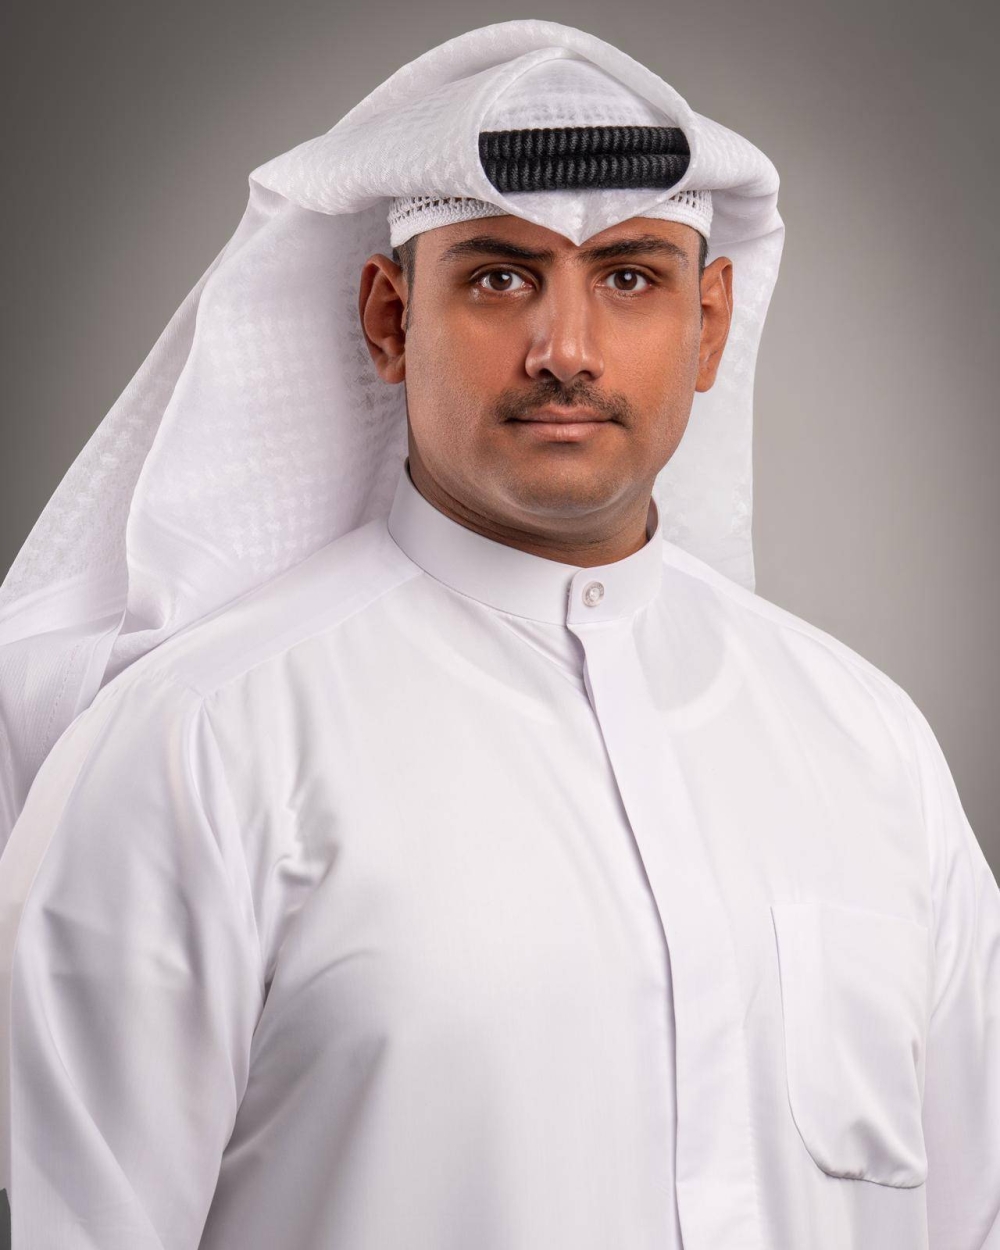 نائب المدير العام لتجربة الزوار في المركز العلمي، محمد السنعوسي